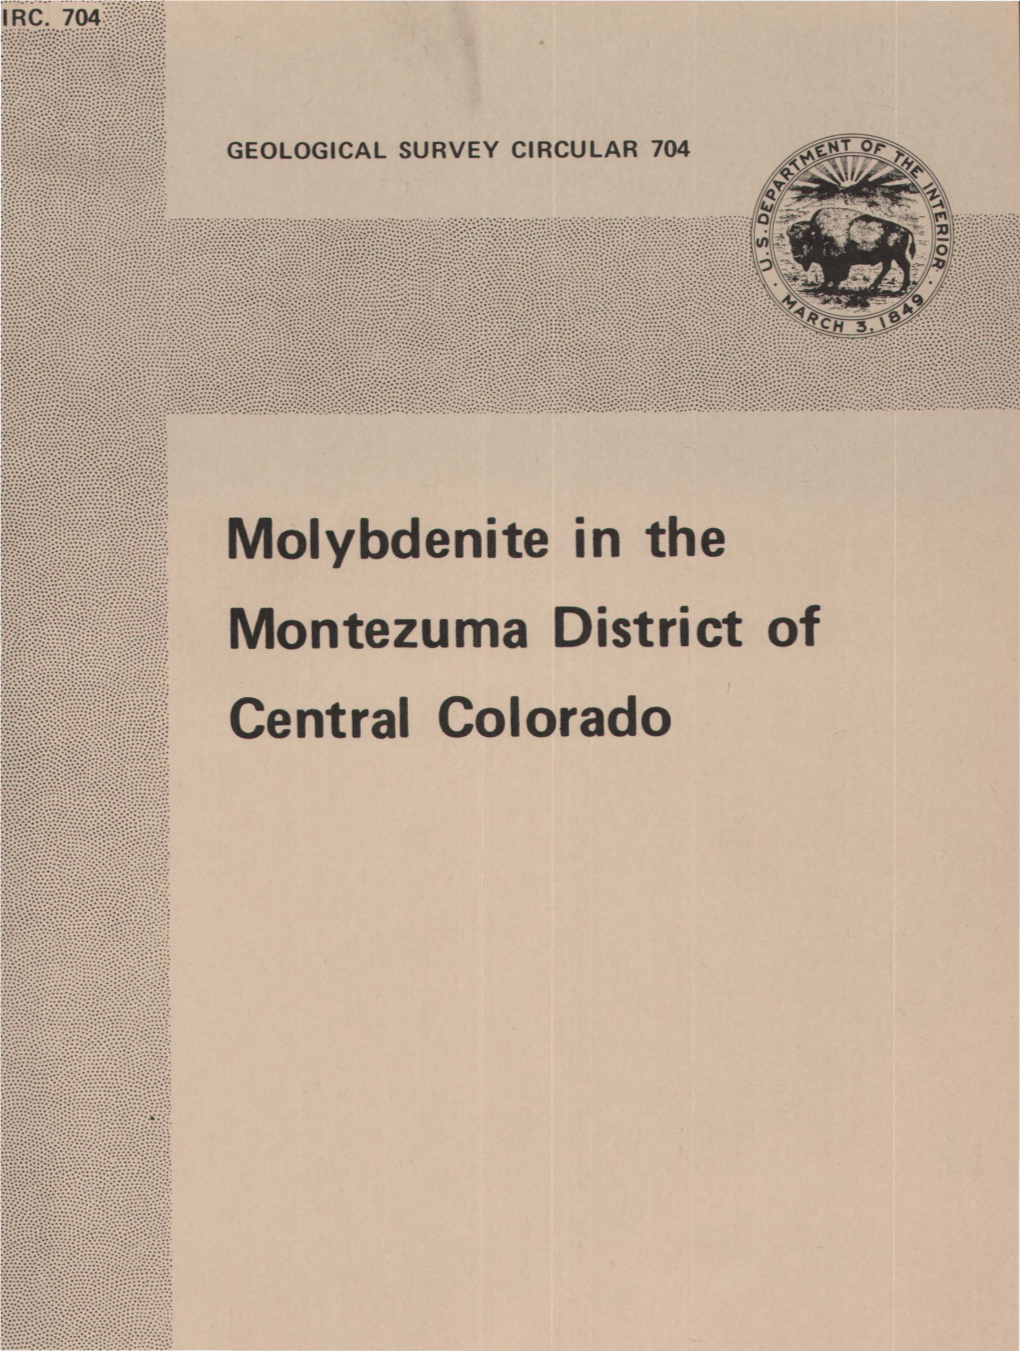 Molybdenite in the Montezuma District of Central Colorado